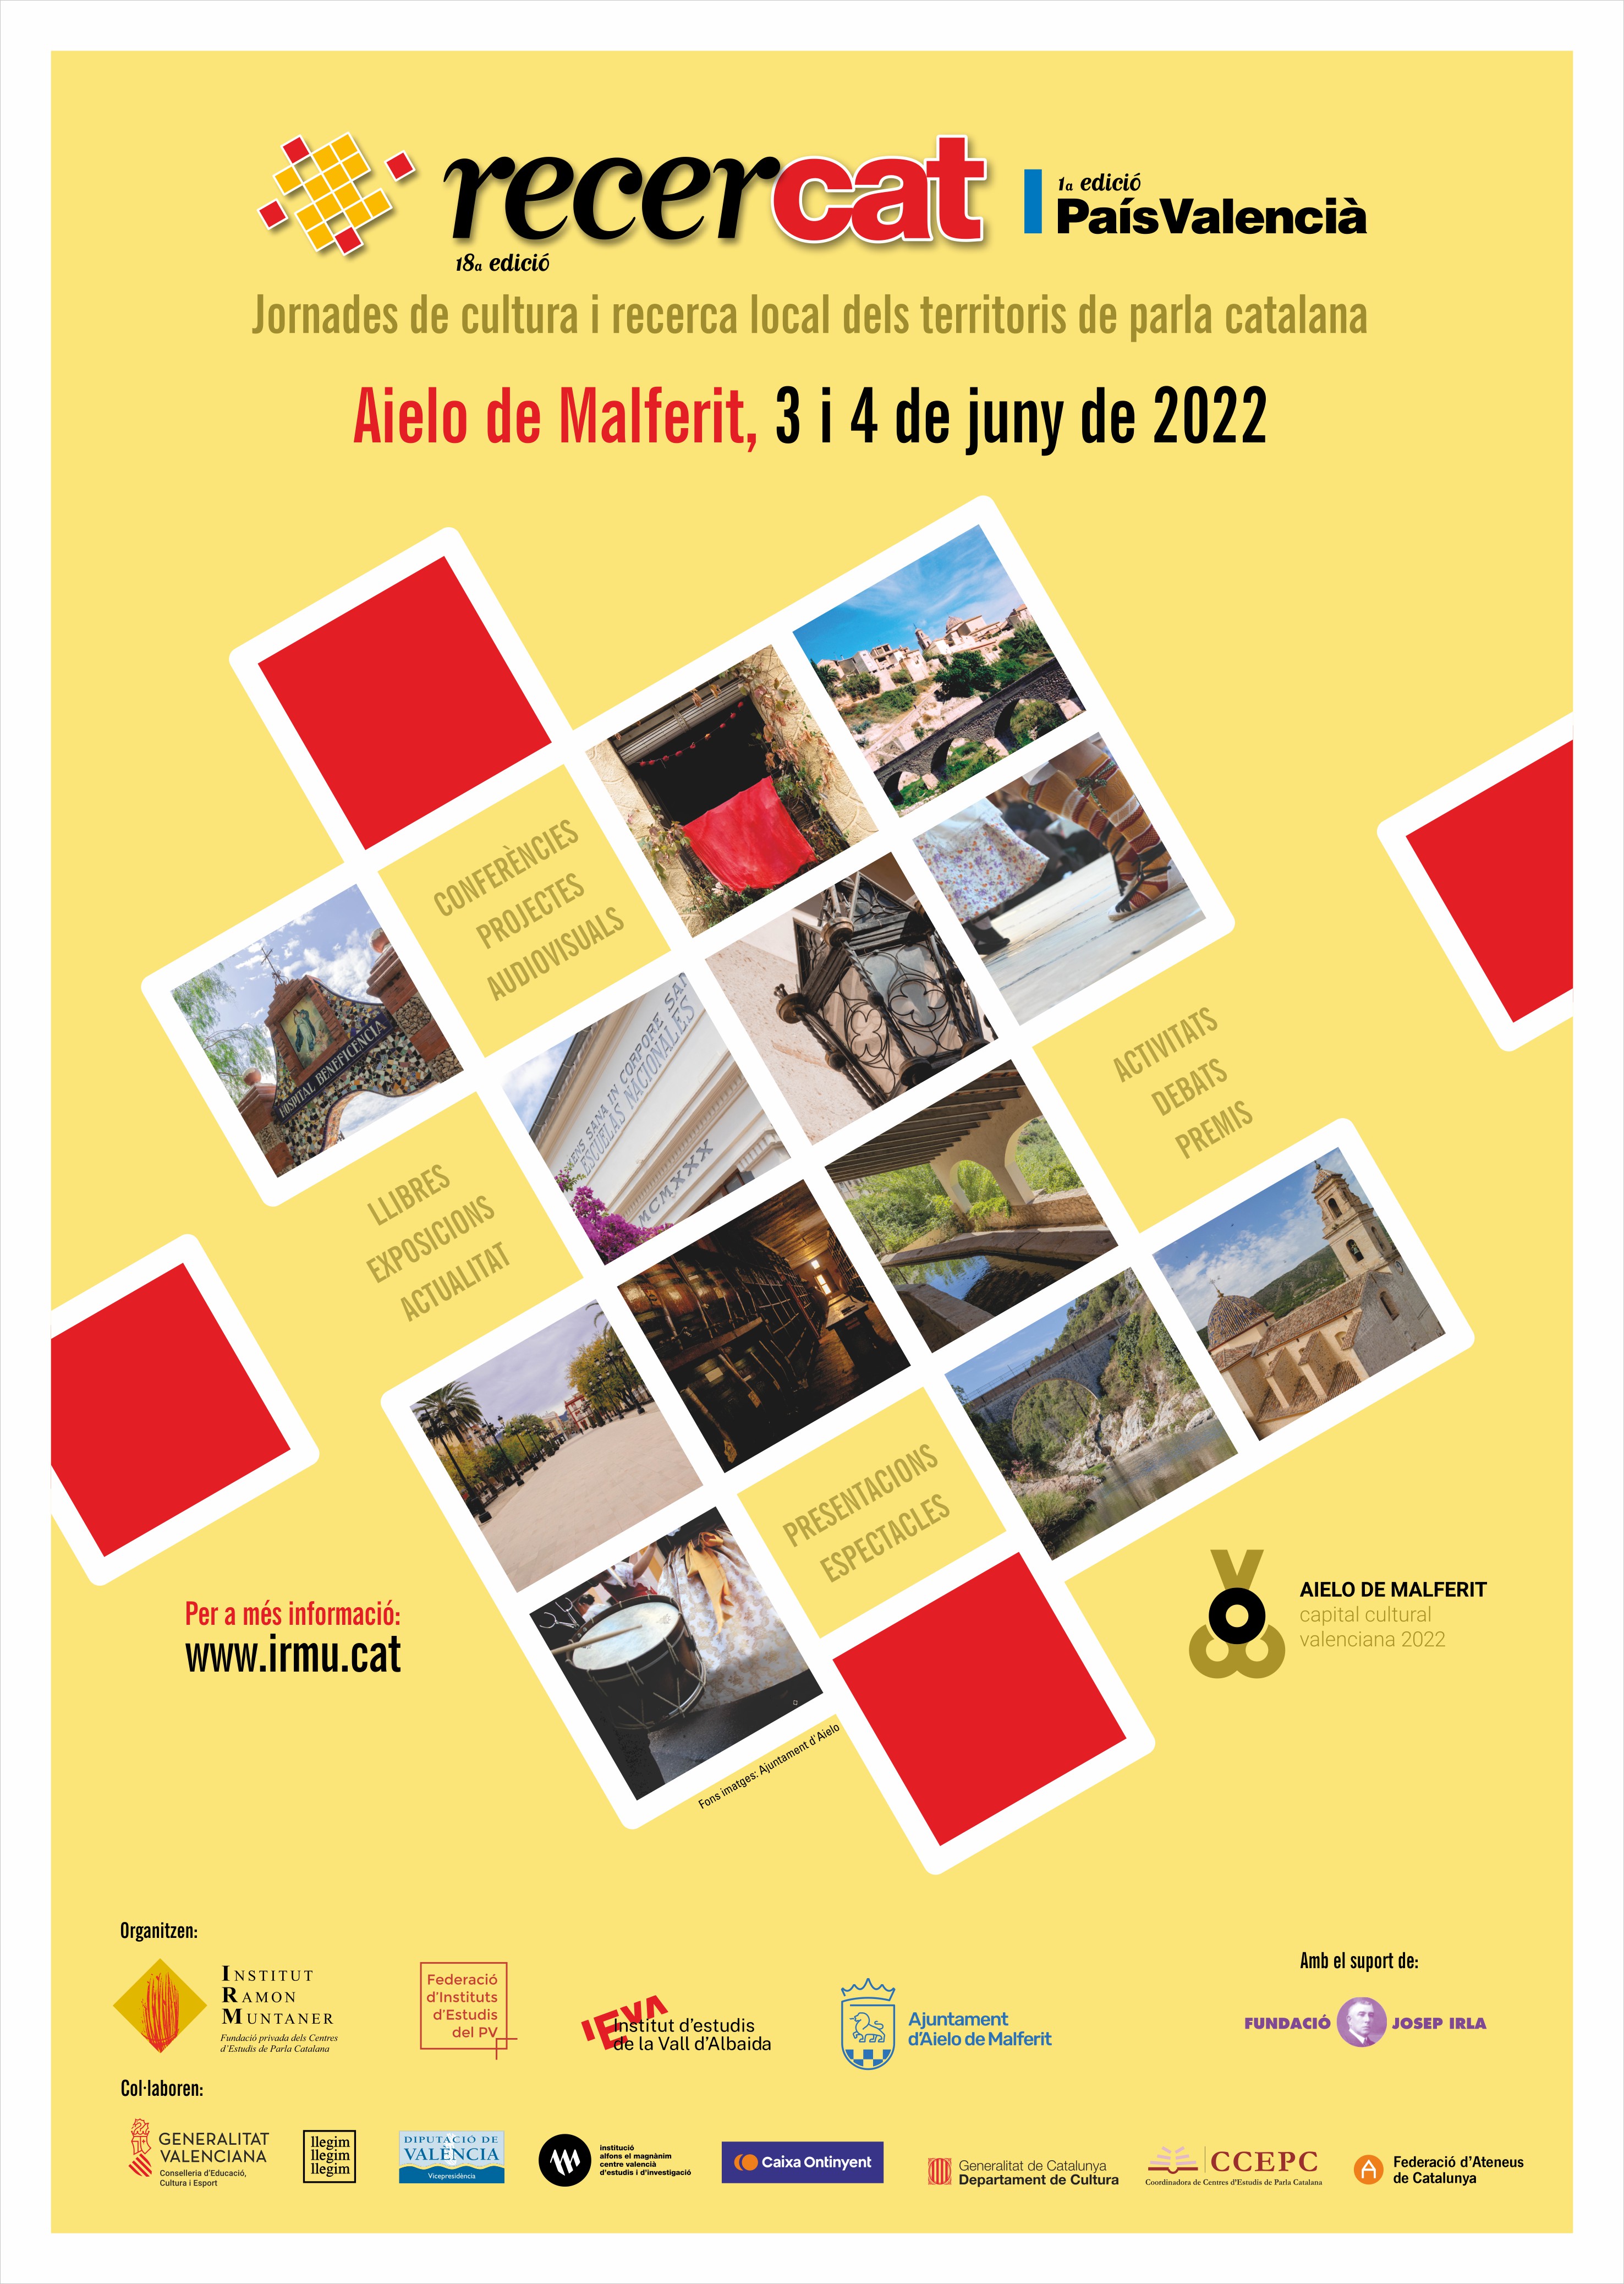 Aielo de malferit acollirà la primera edició del Recercat en terres valencianes els dies 3 i 4 de juny.